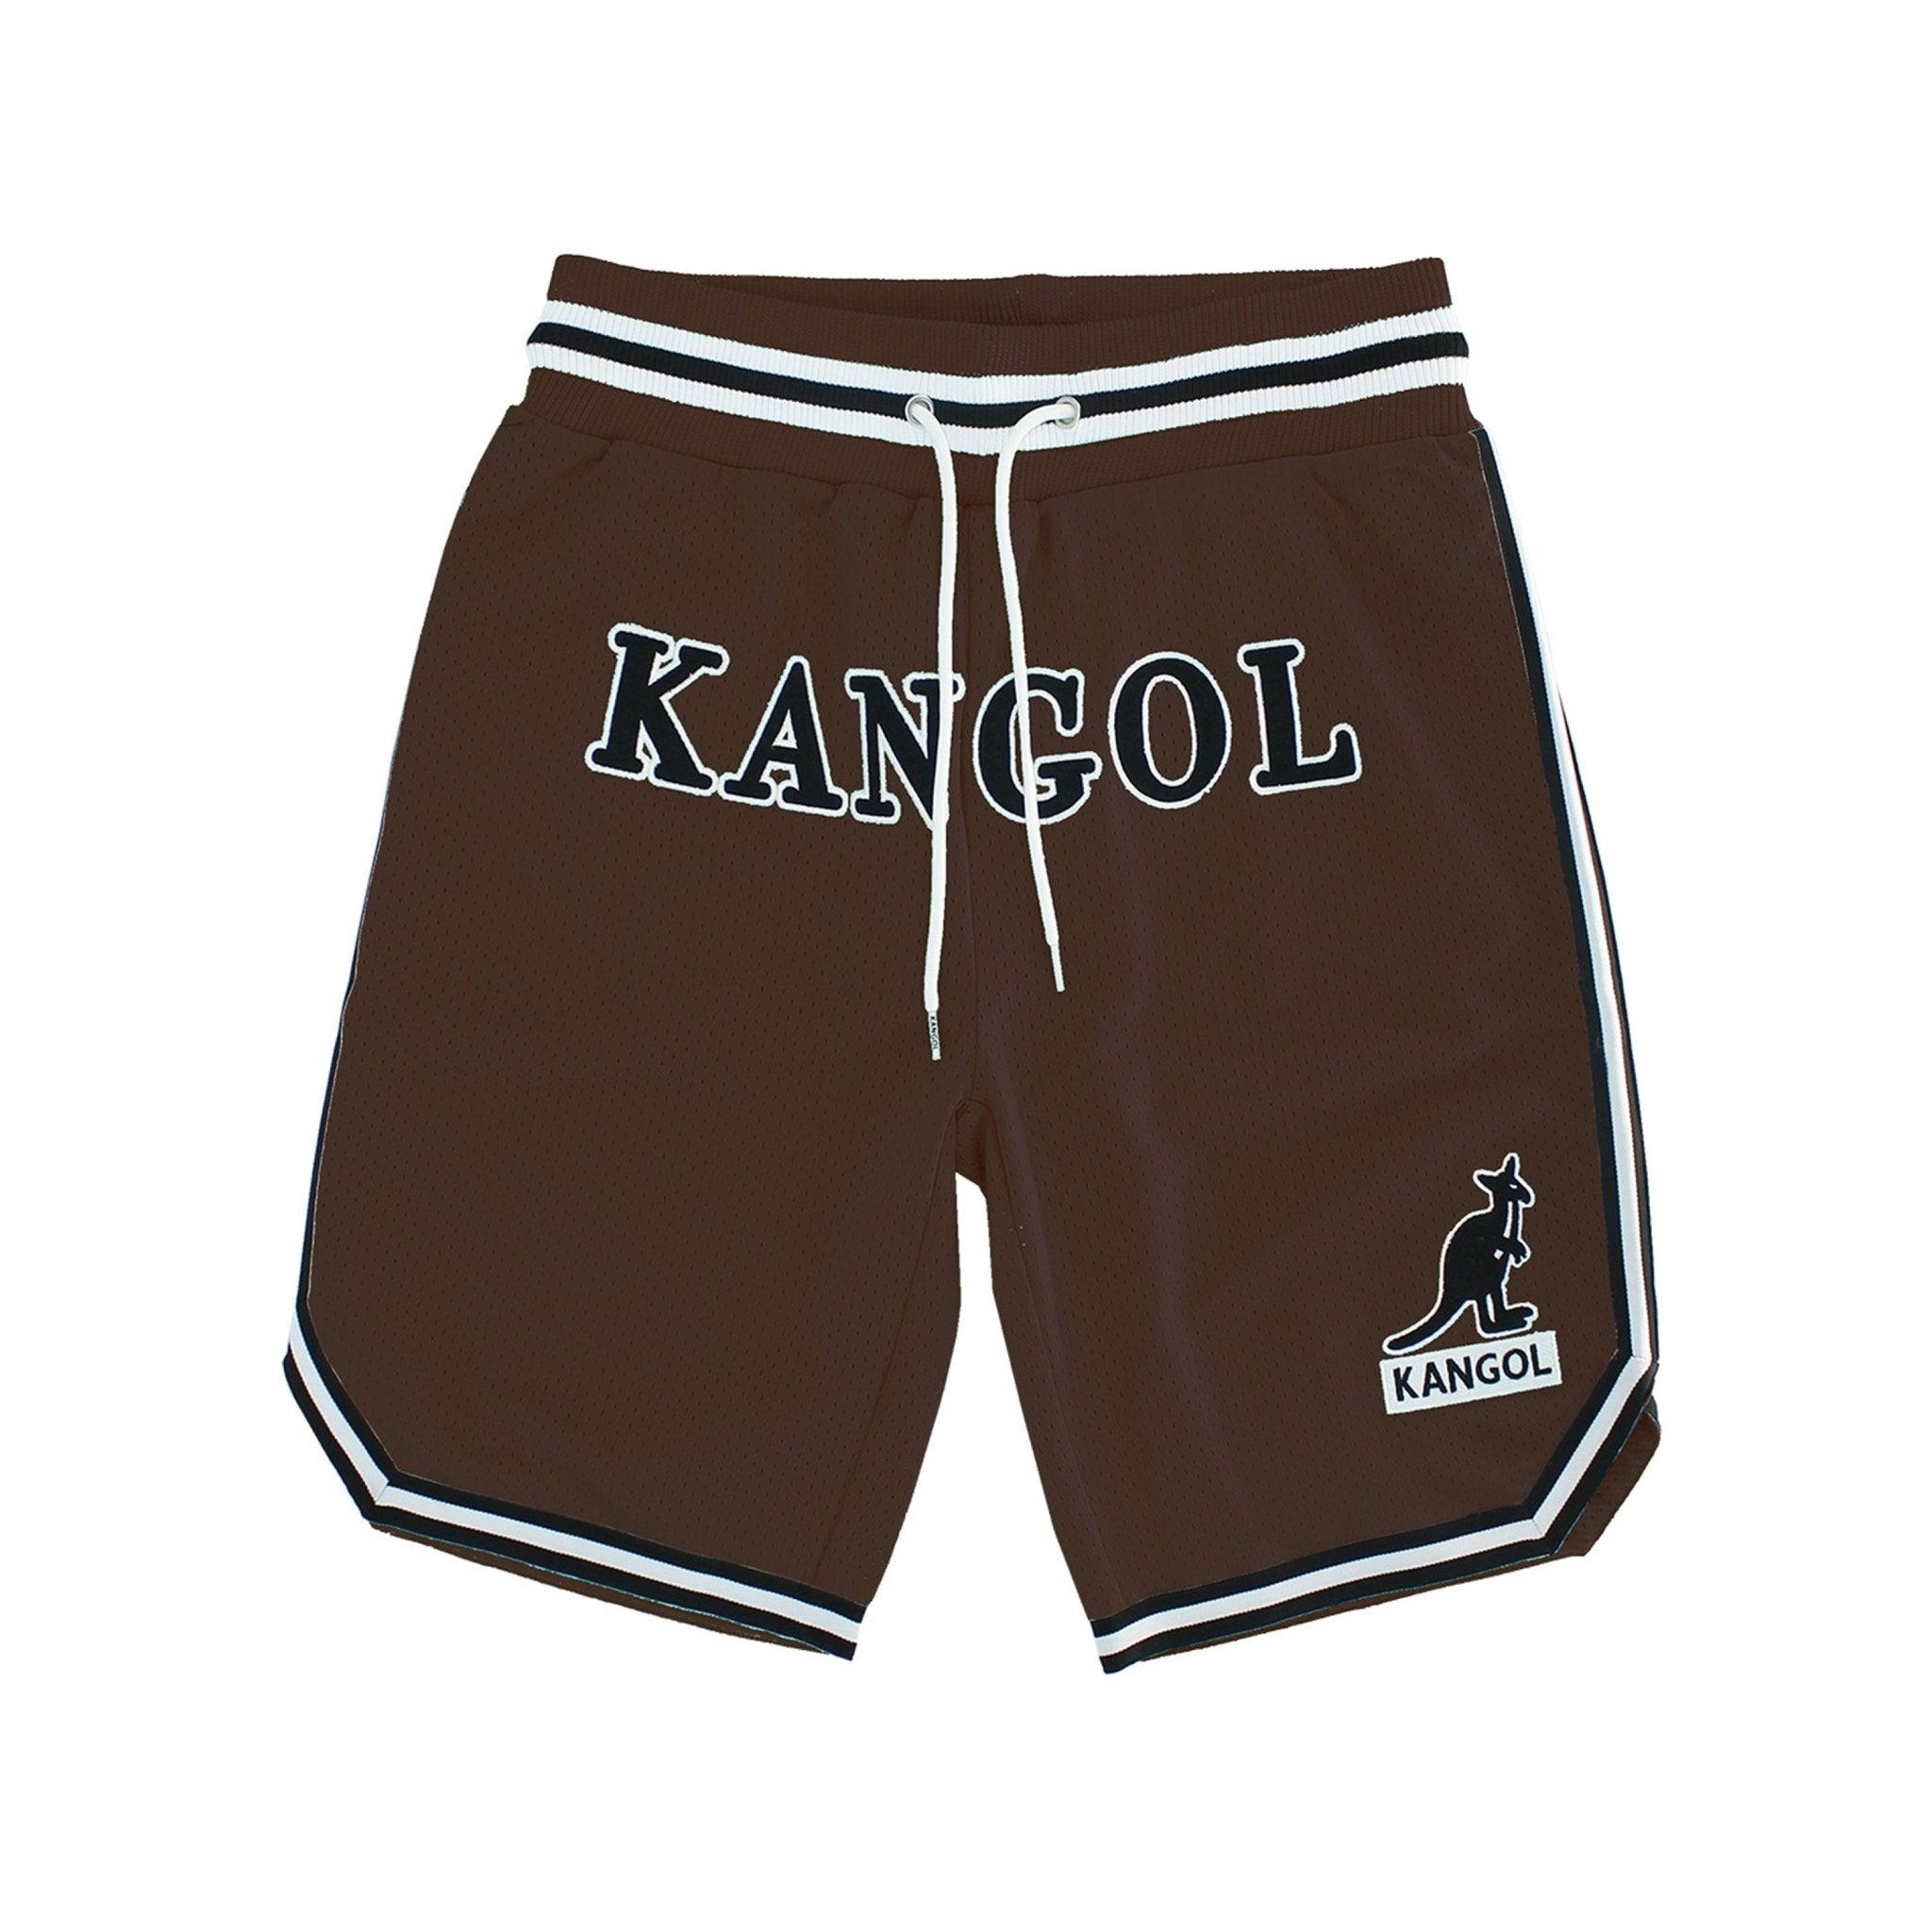 Kangol Game Day Mesh Basketball Shorts - Fashion Hub Club